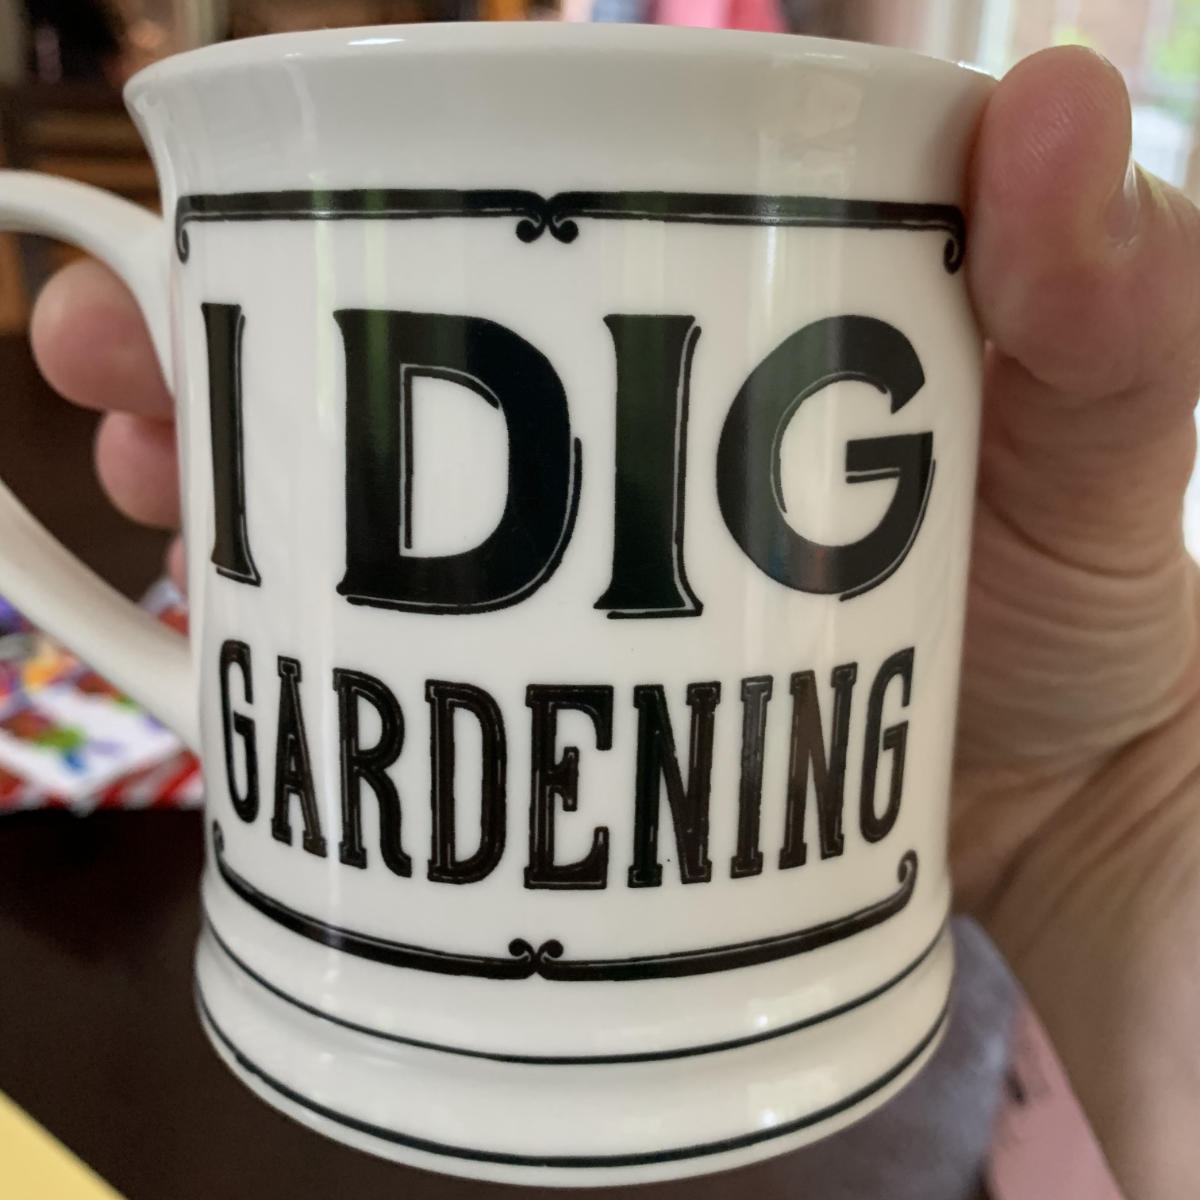 A coffee mug that says "I Dig Gardening"